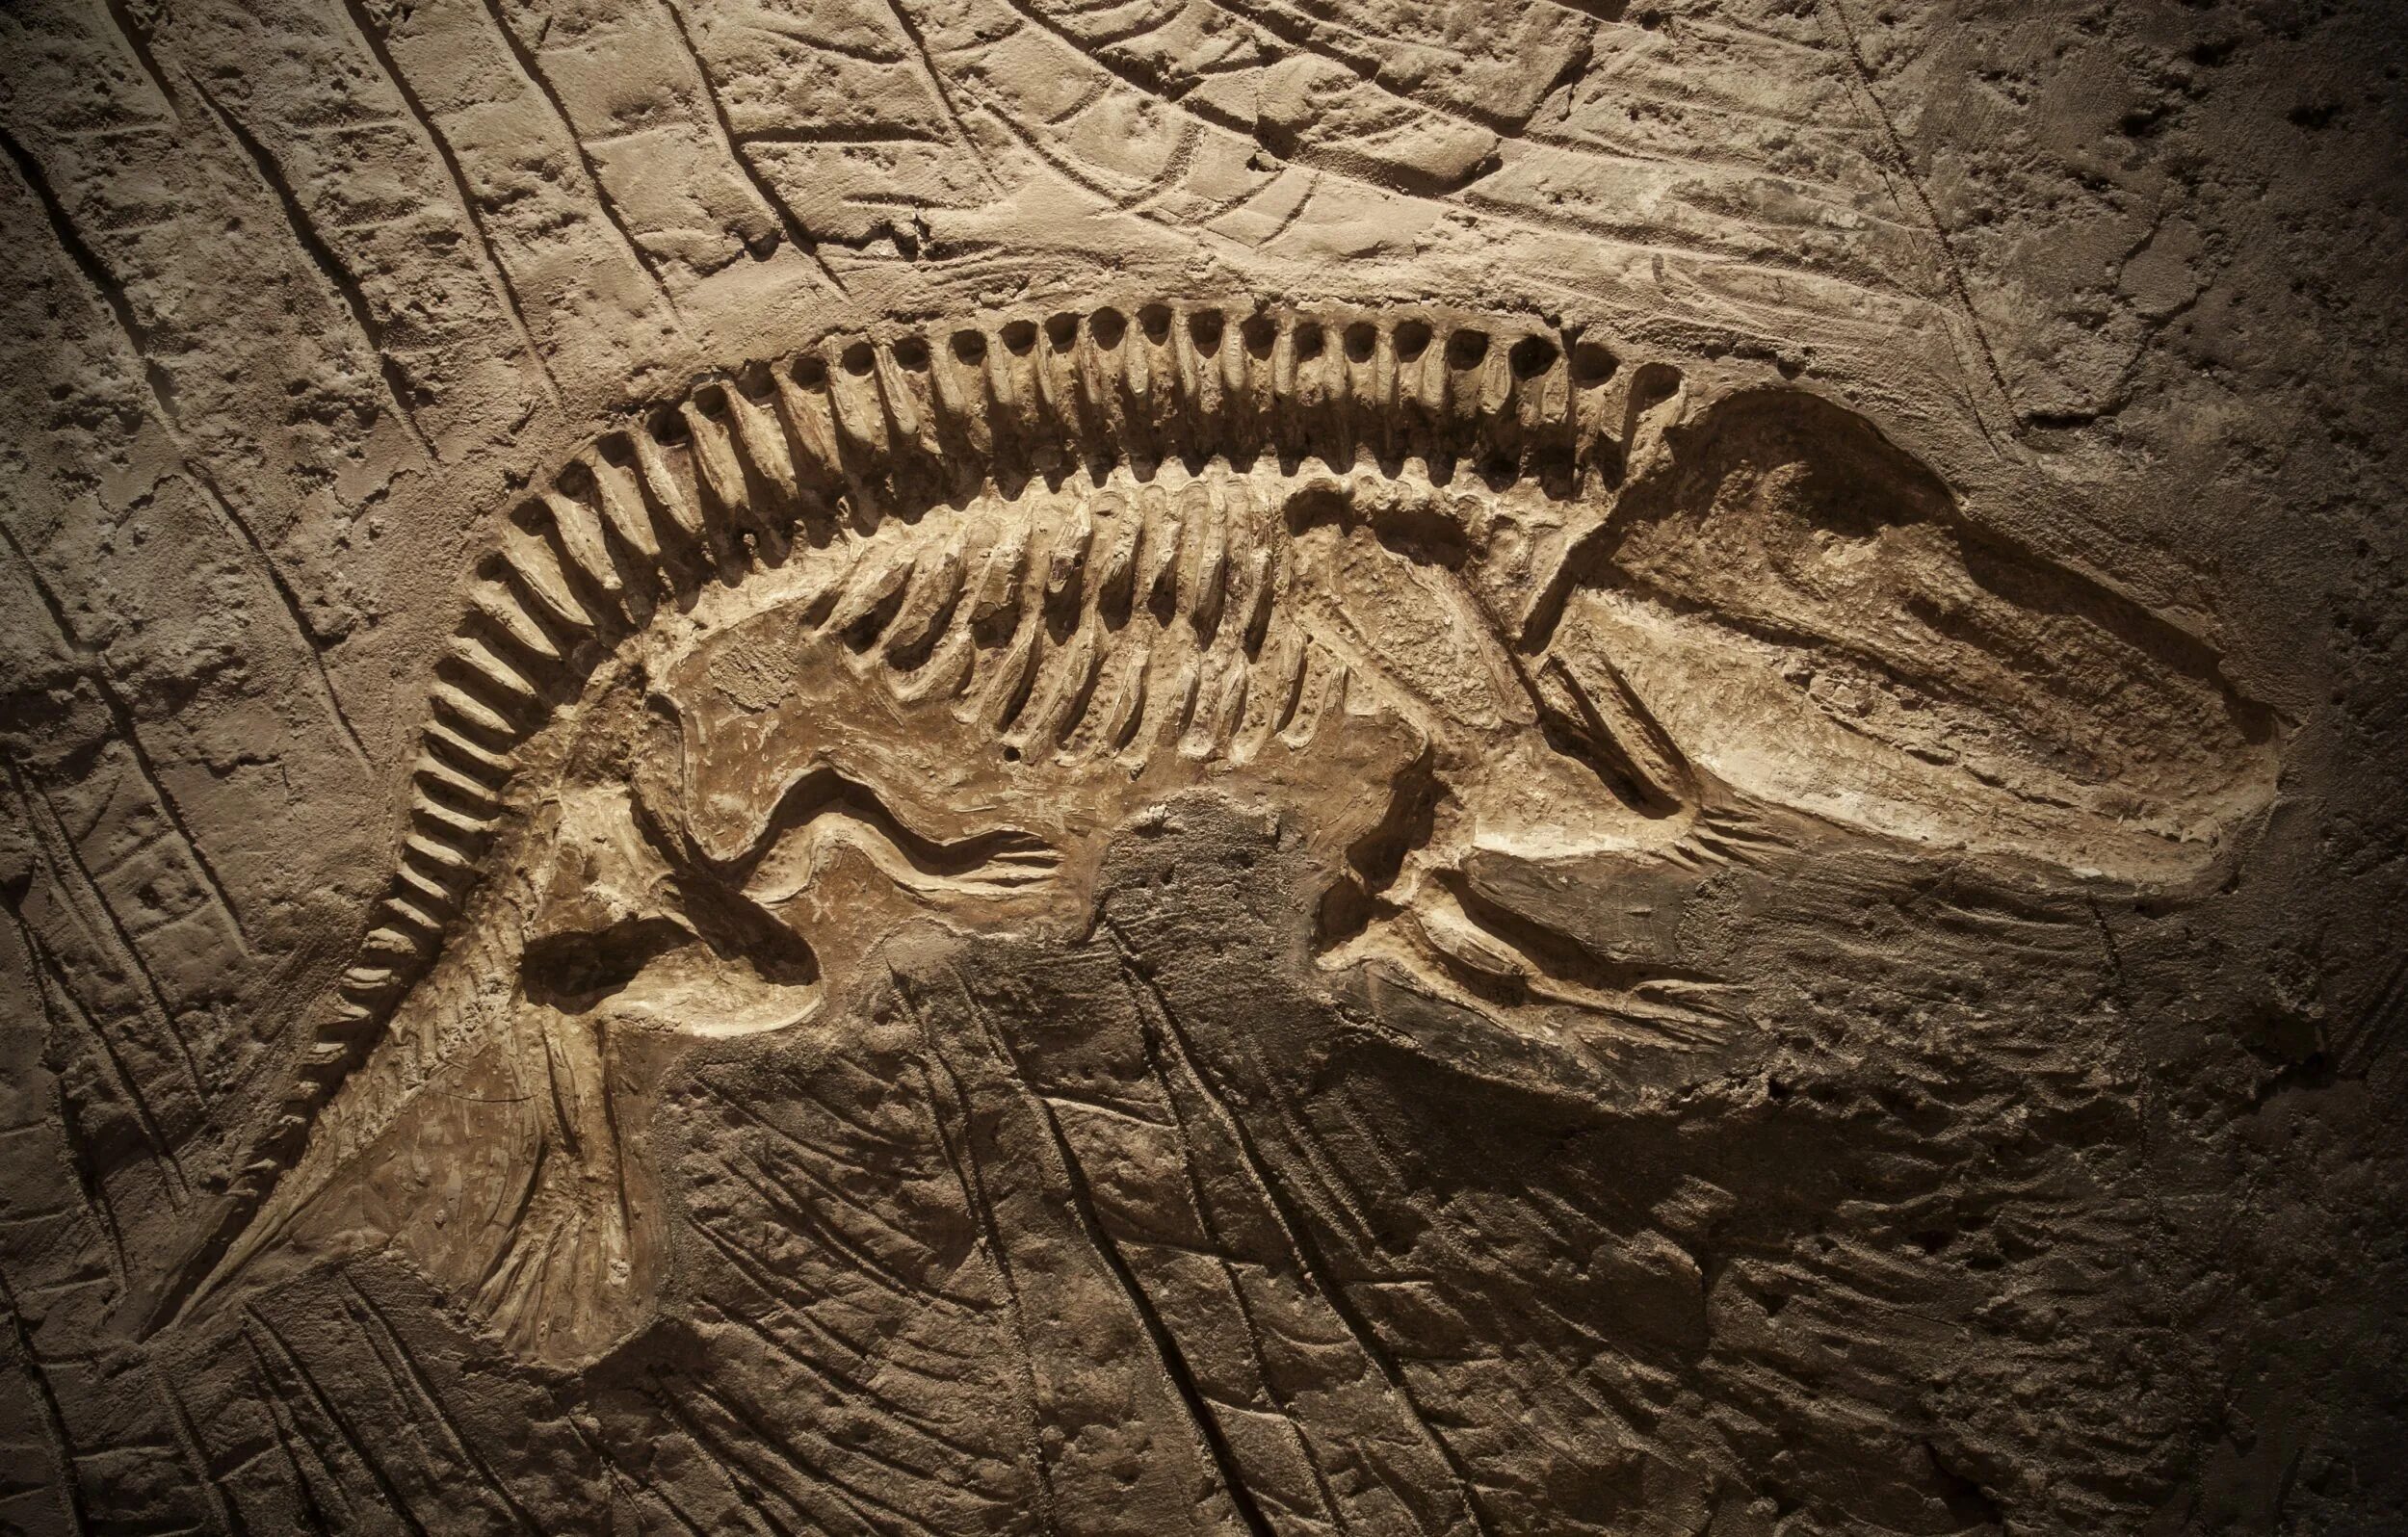 Fossil окаменелости. Стегозавр окаменелости. Окаменелости динозавров. Ископаемые останки динозавров.